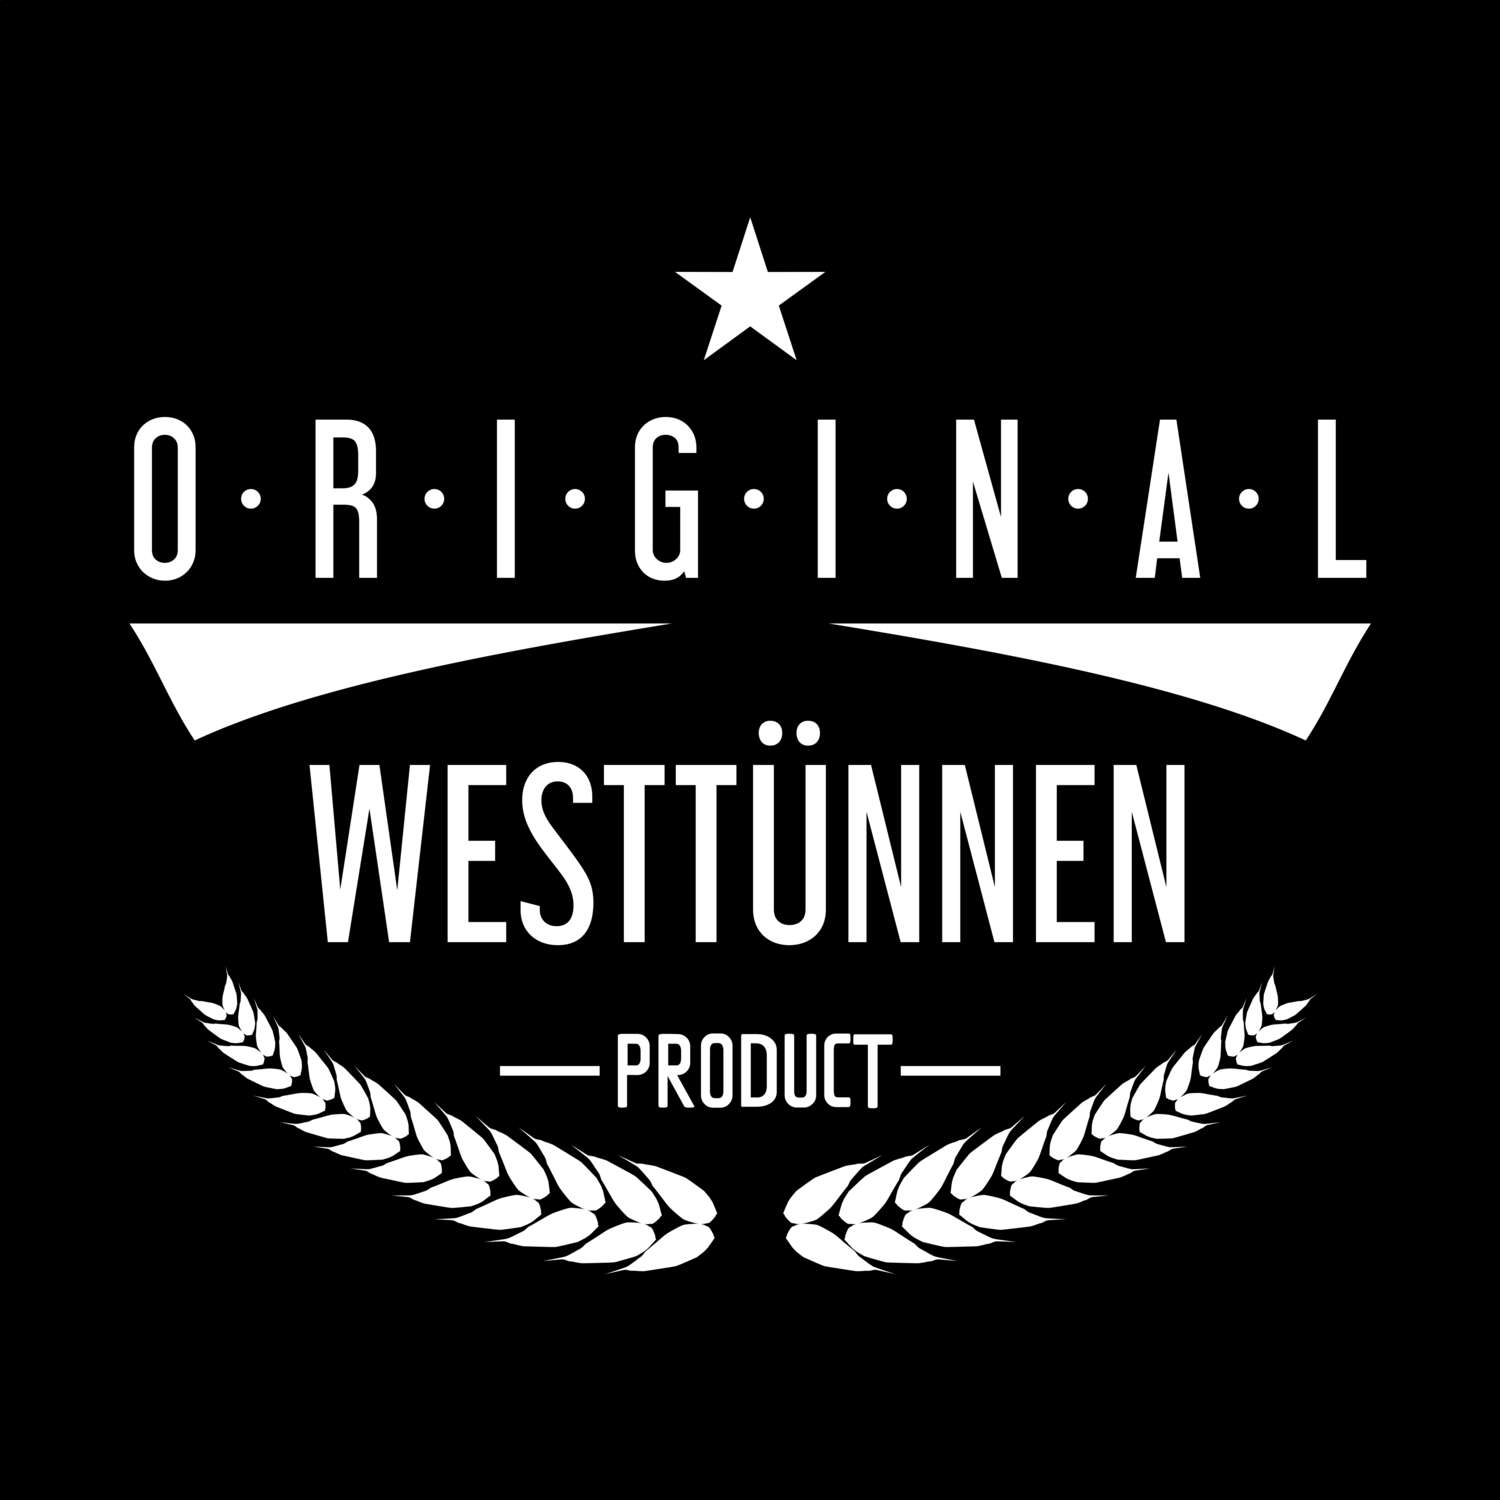 Westtünnen T-Shirt »Original Product«